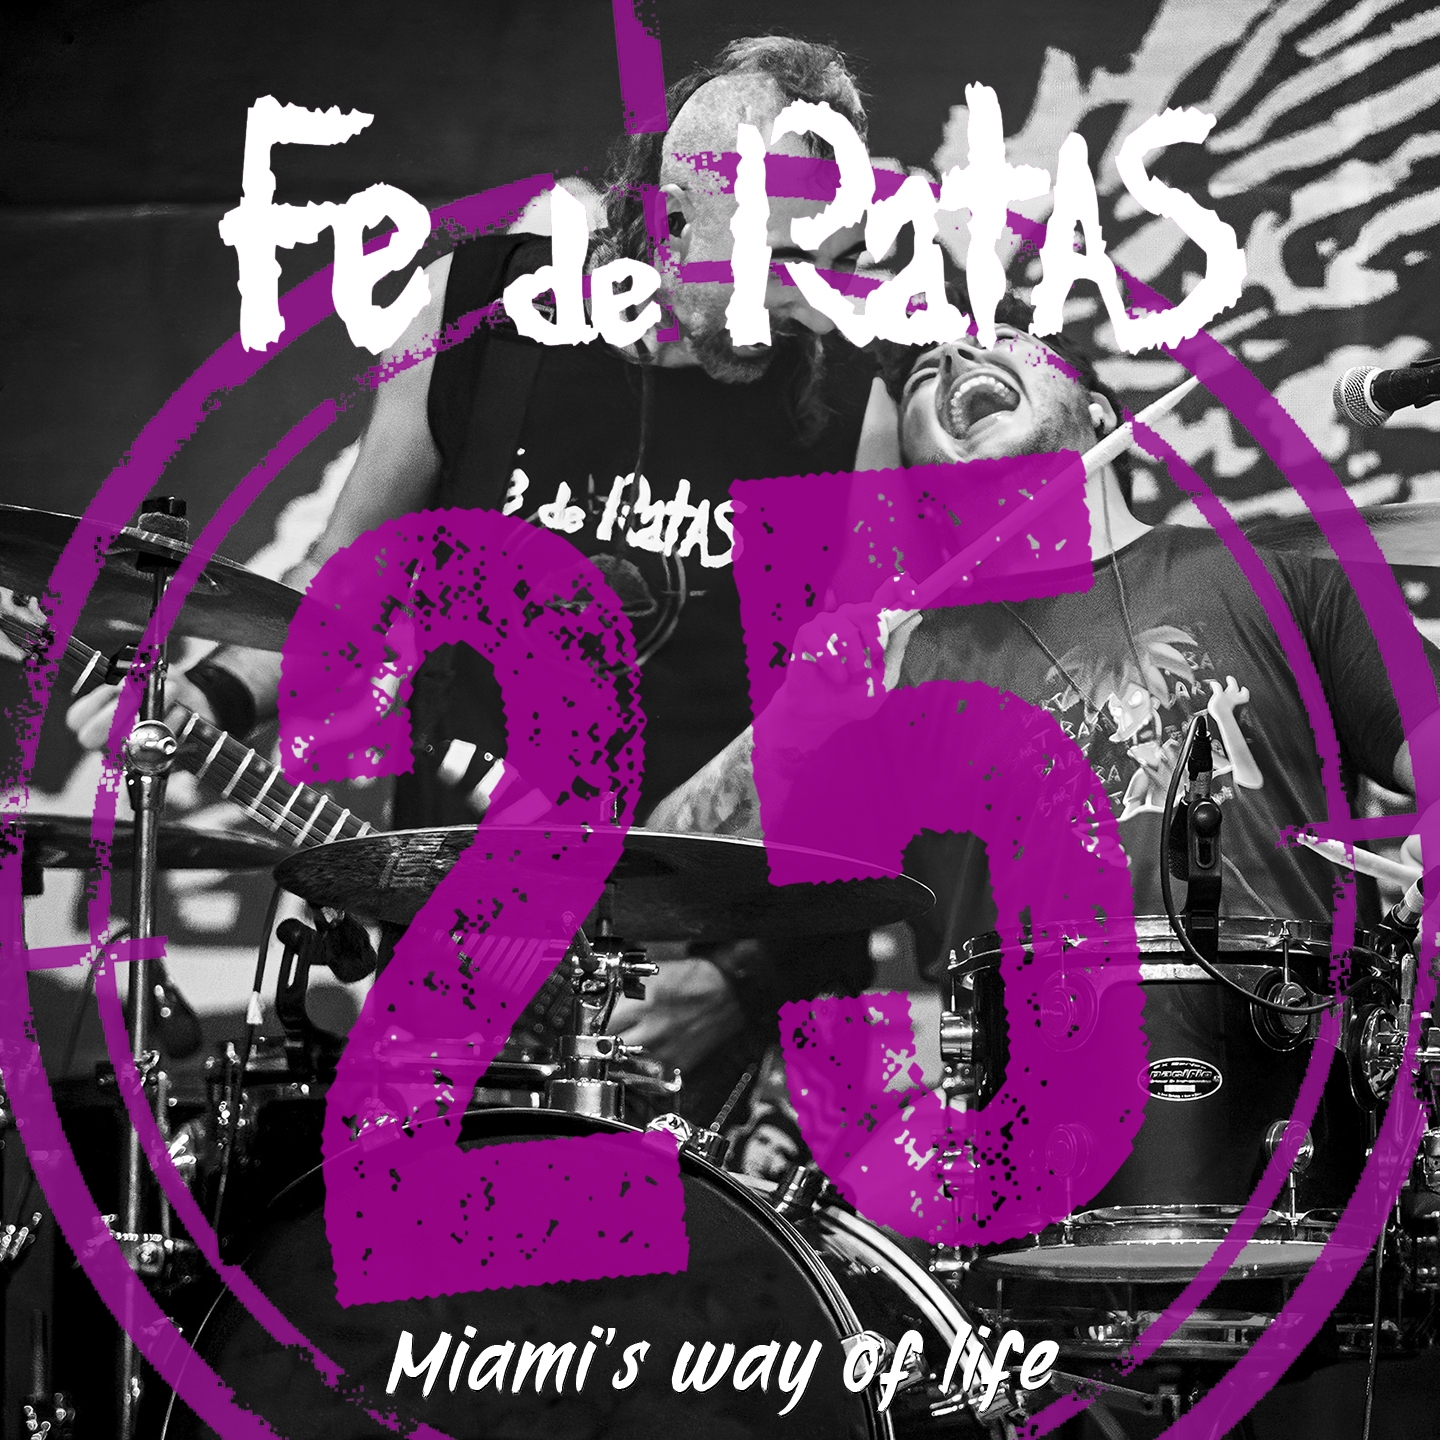 Fe de Ratas - Miami's way of life (Directo 25º Aniversario) (Video)